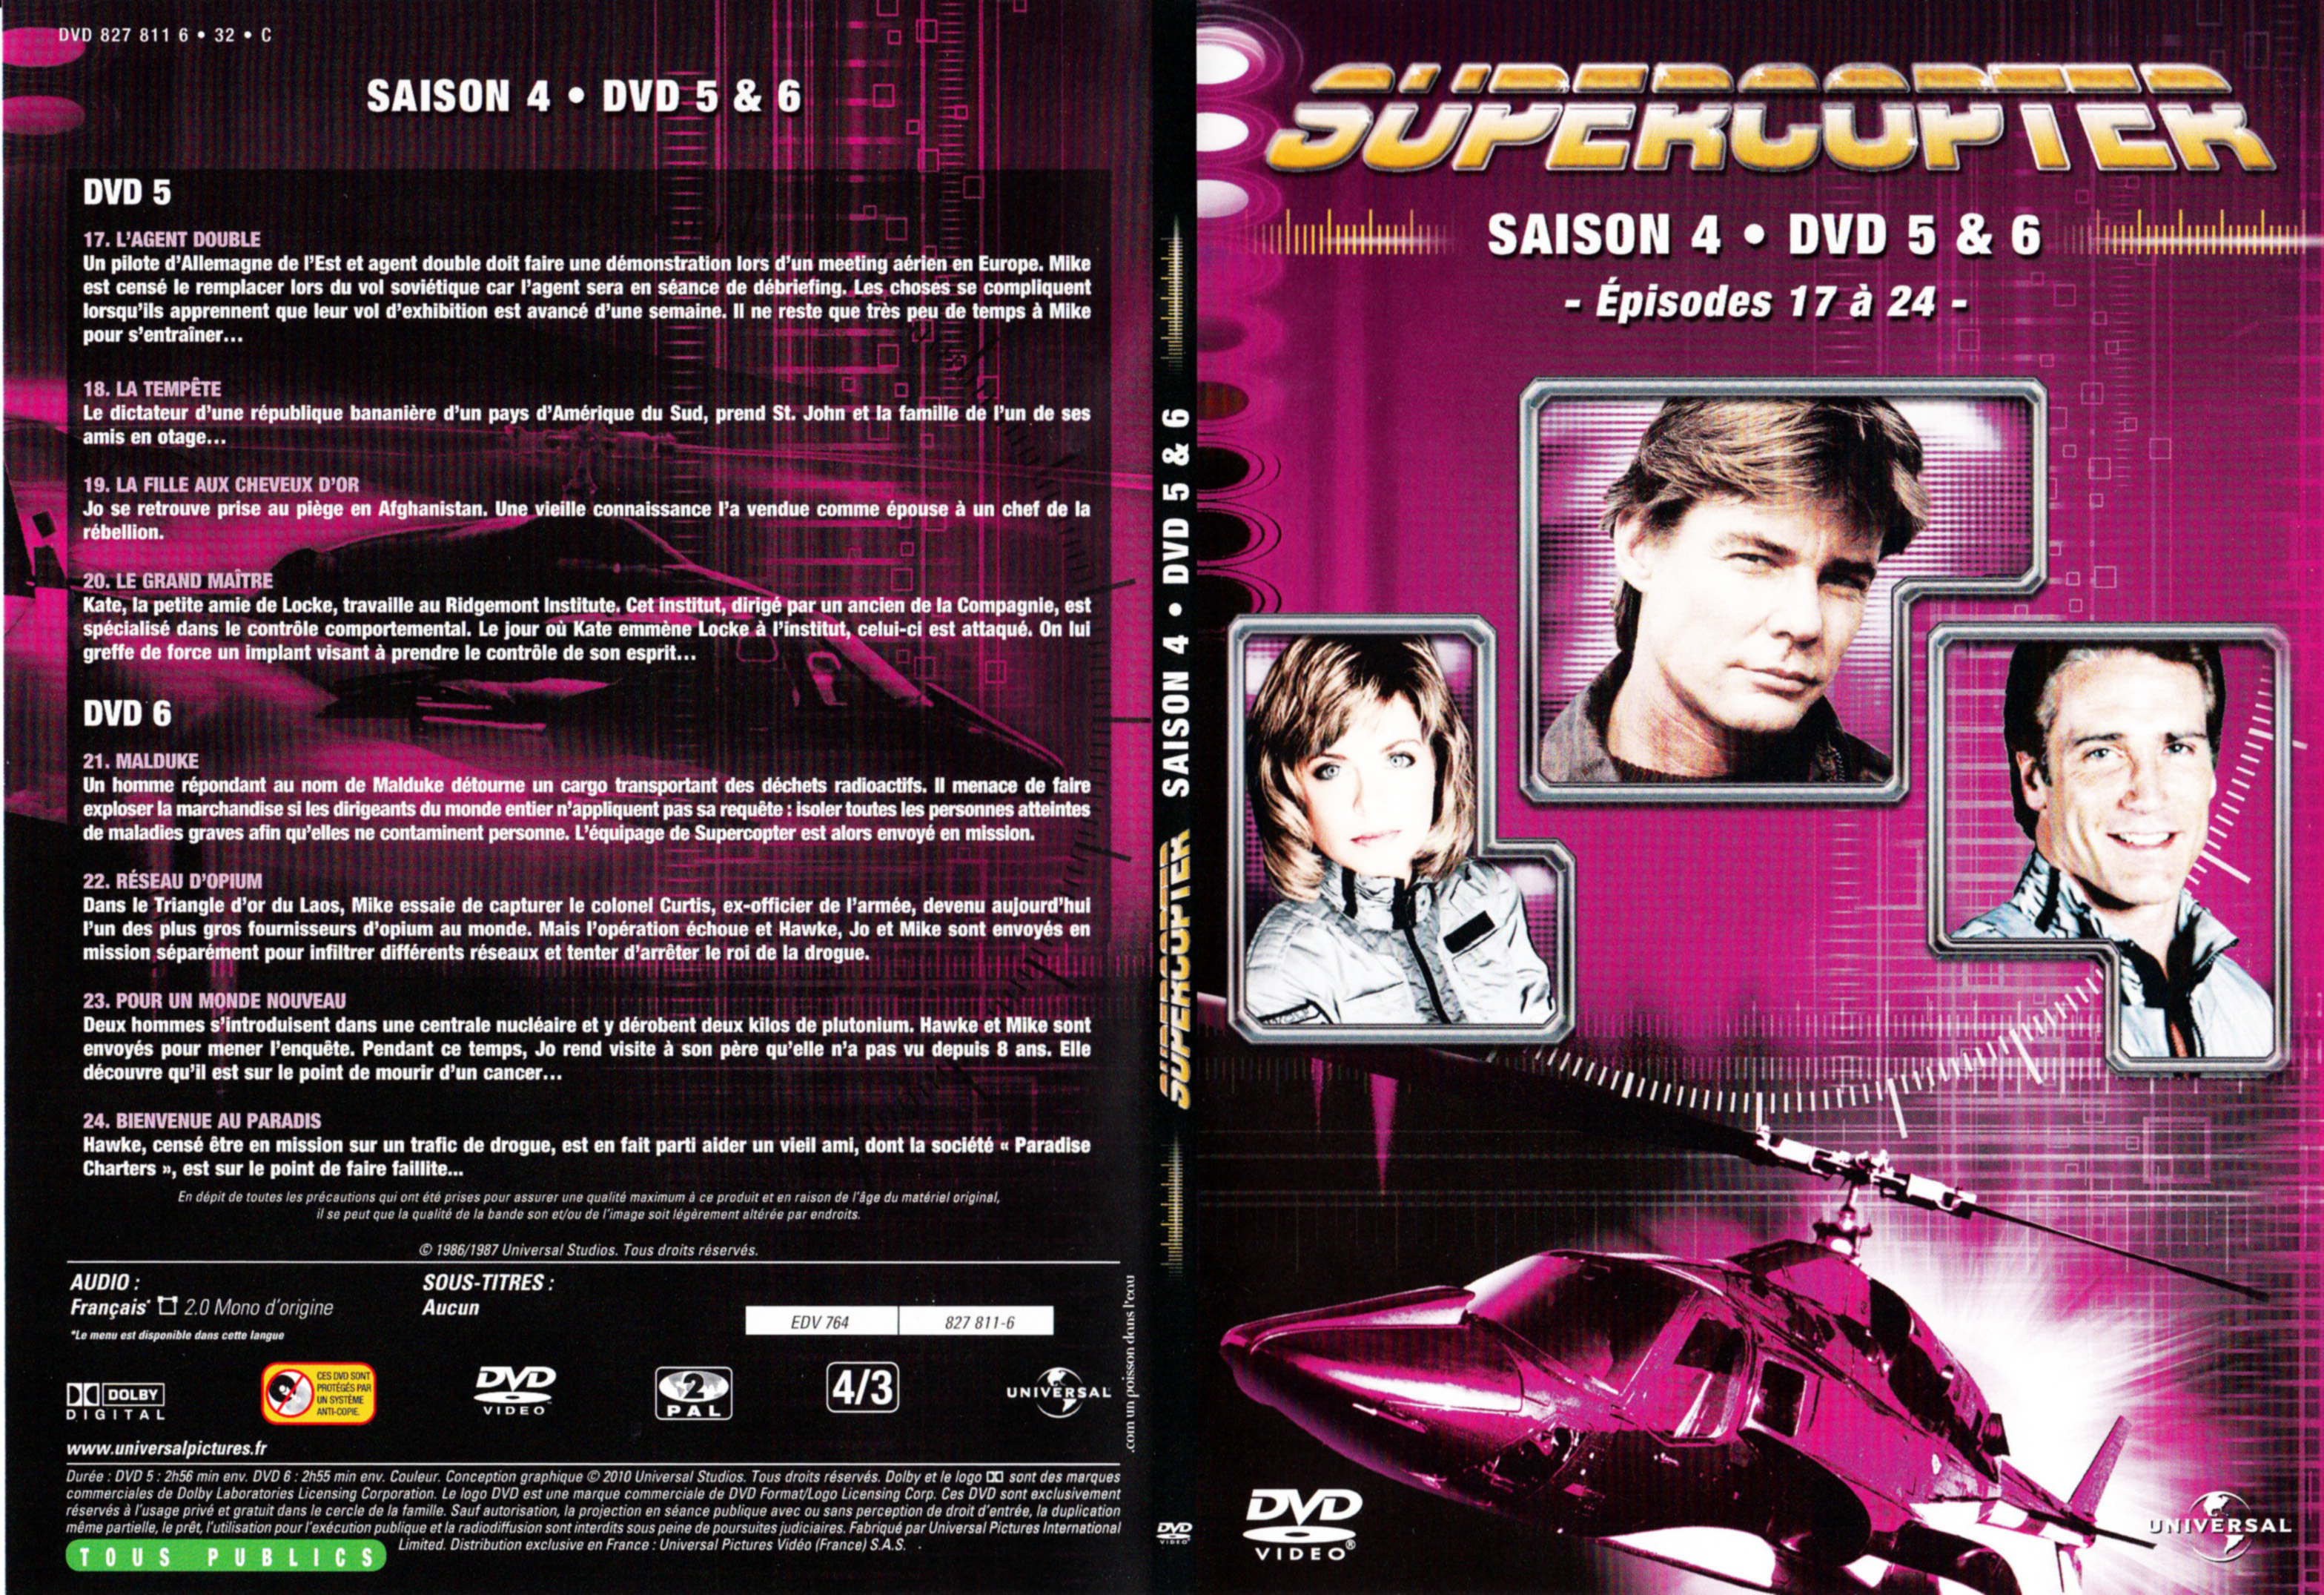 Jaquette DVD Supercopter Saison 4 DVD 3